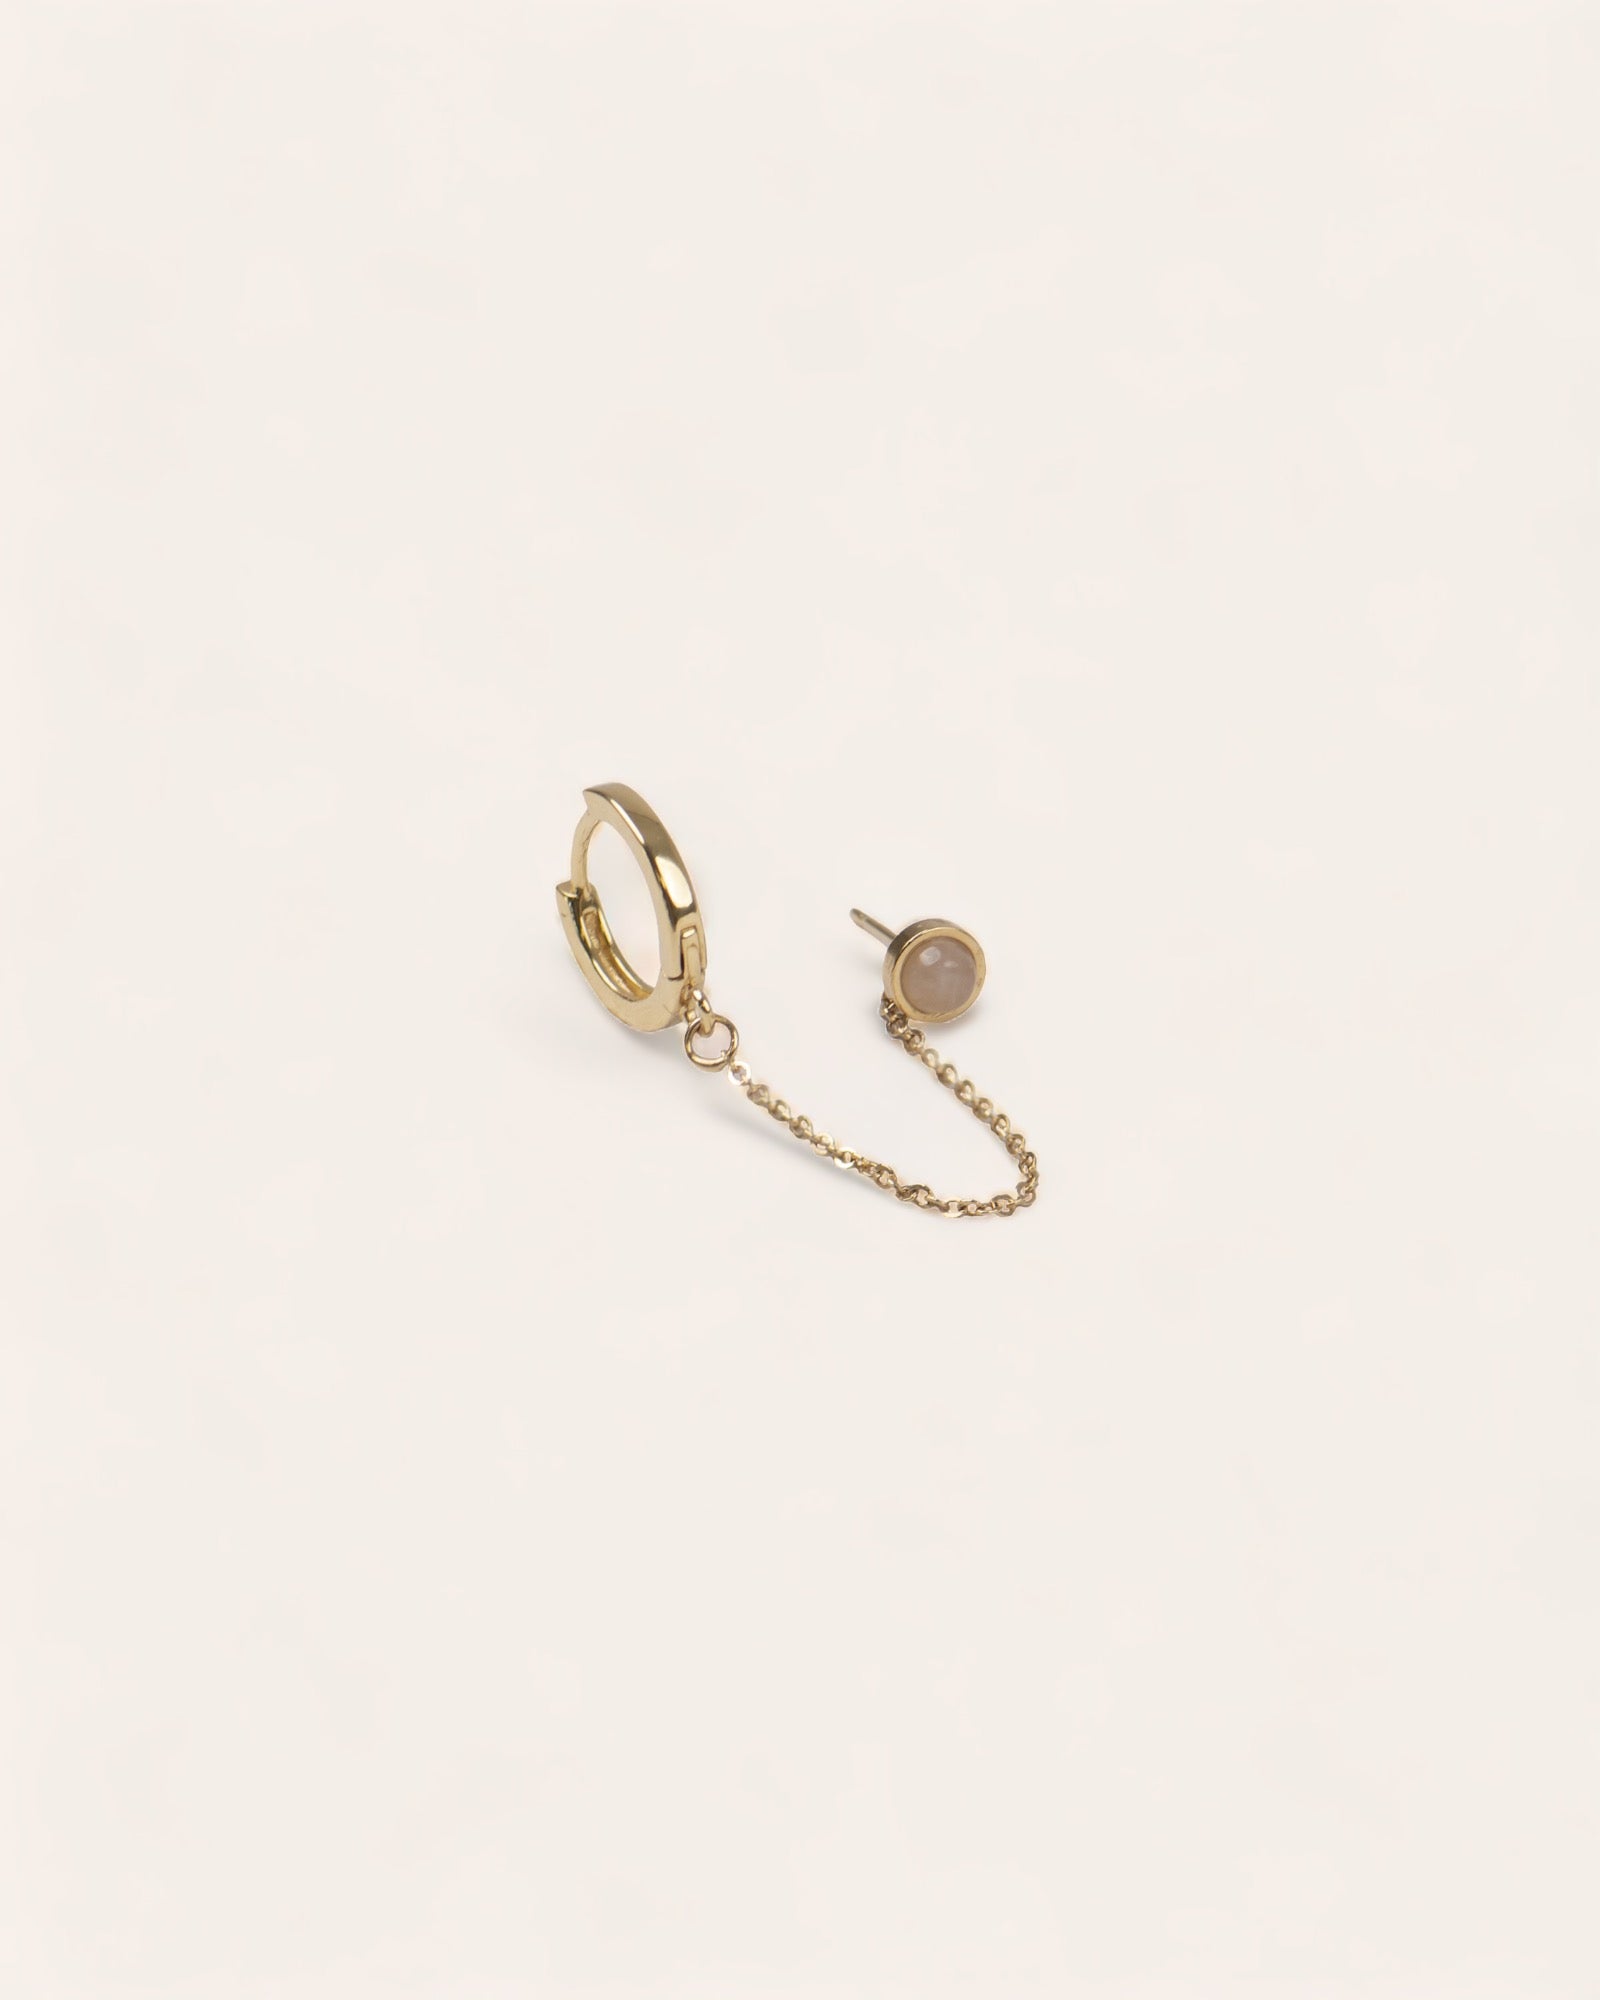 Combinaison de deux boucles d'oreilles en plaqué or, avec une boucle en chaînette pendante, et une boucle puce en quartz rose facettée, fabriquées en France.